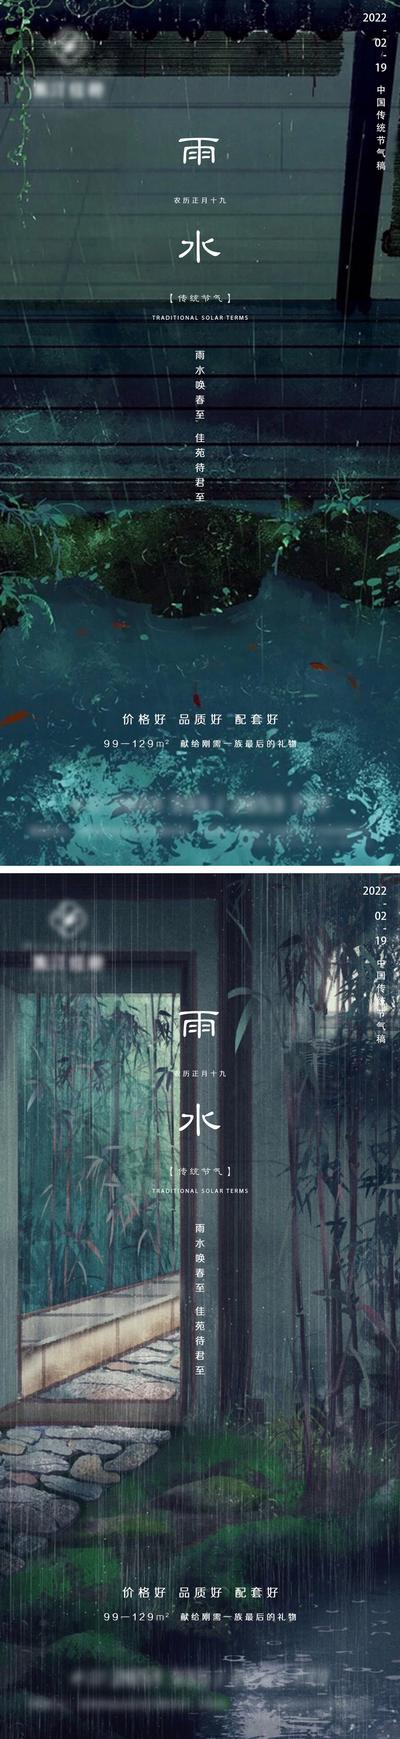 南门网 海报 地产 二十四节气 雨水 中式 下雨 屋檐 系列